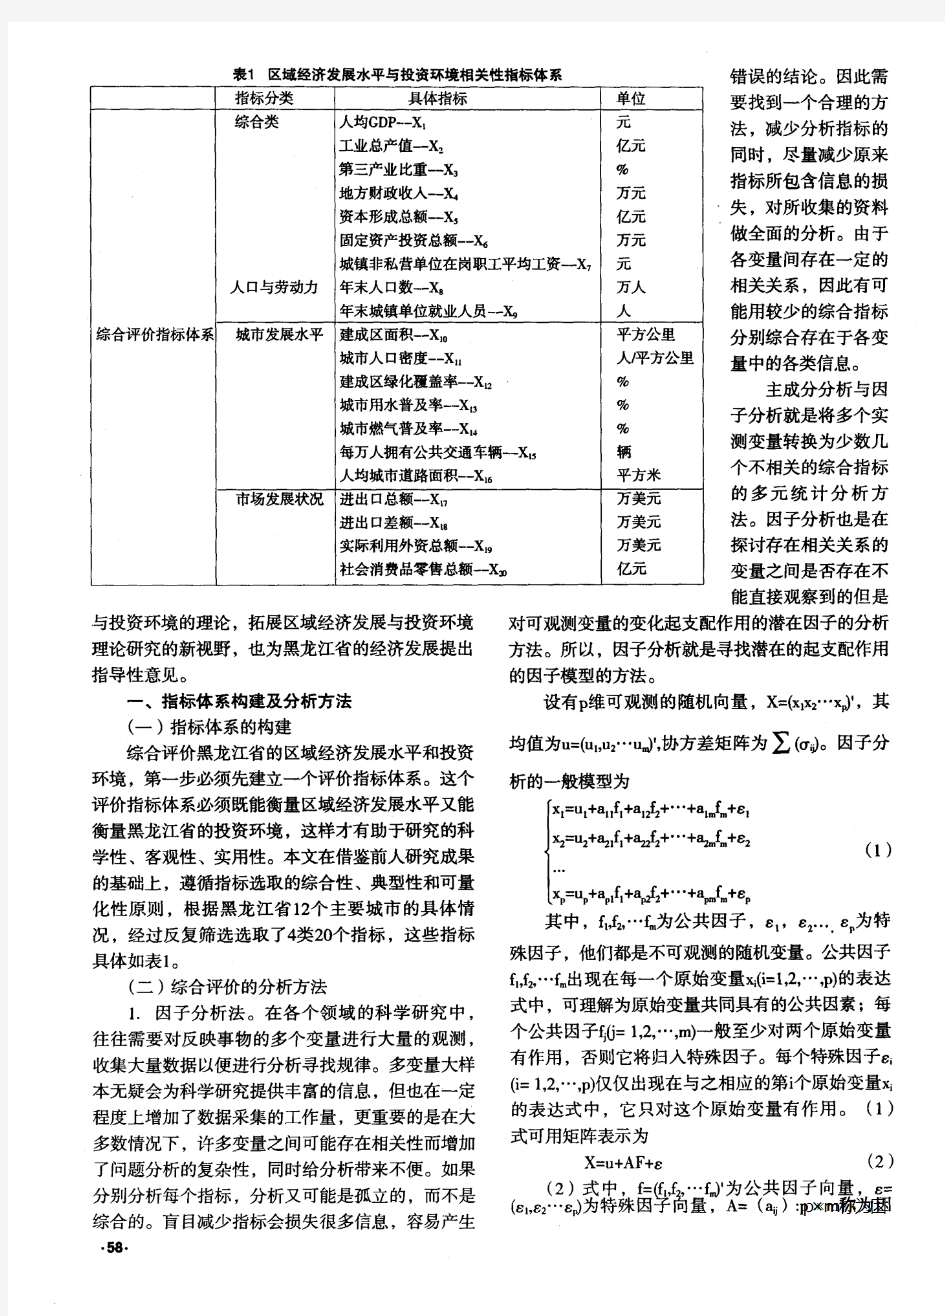 黑龙江省区域经济发展与投资环境综合评价